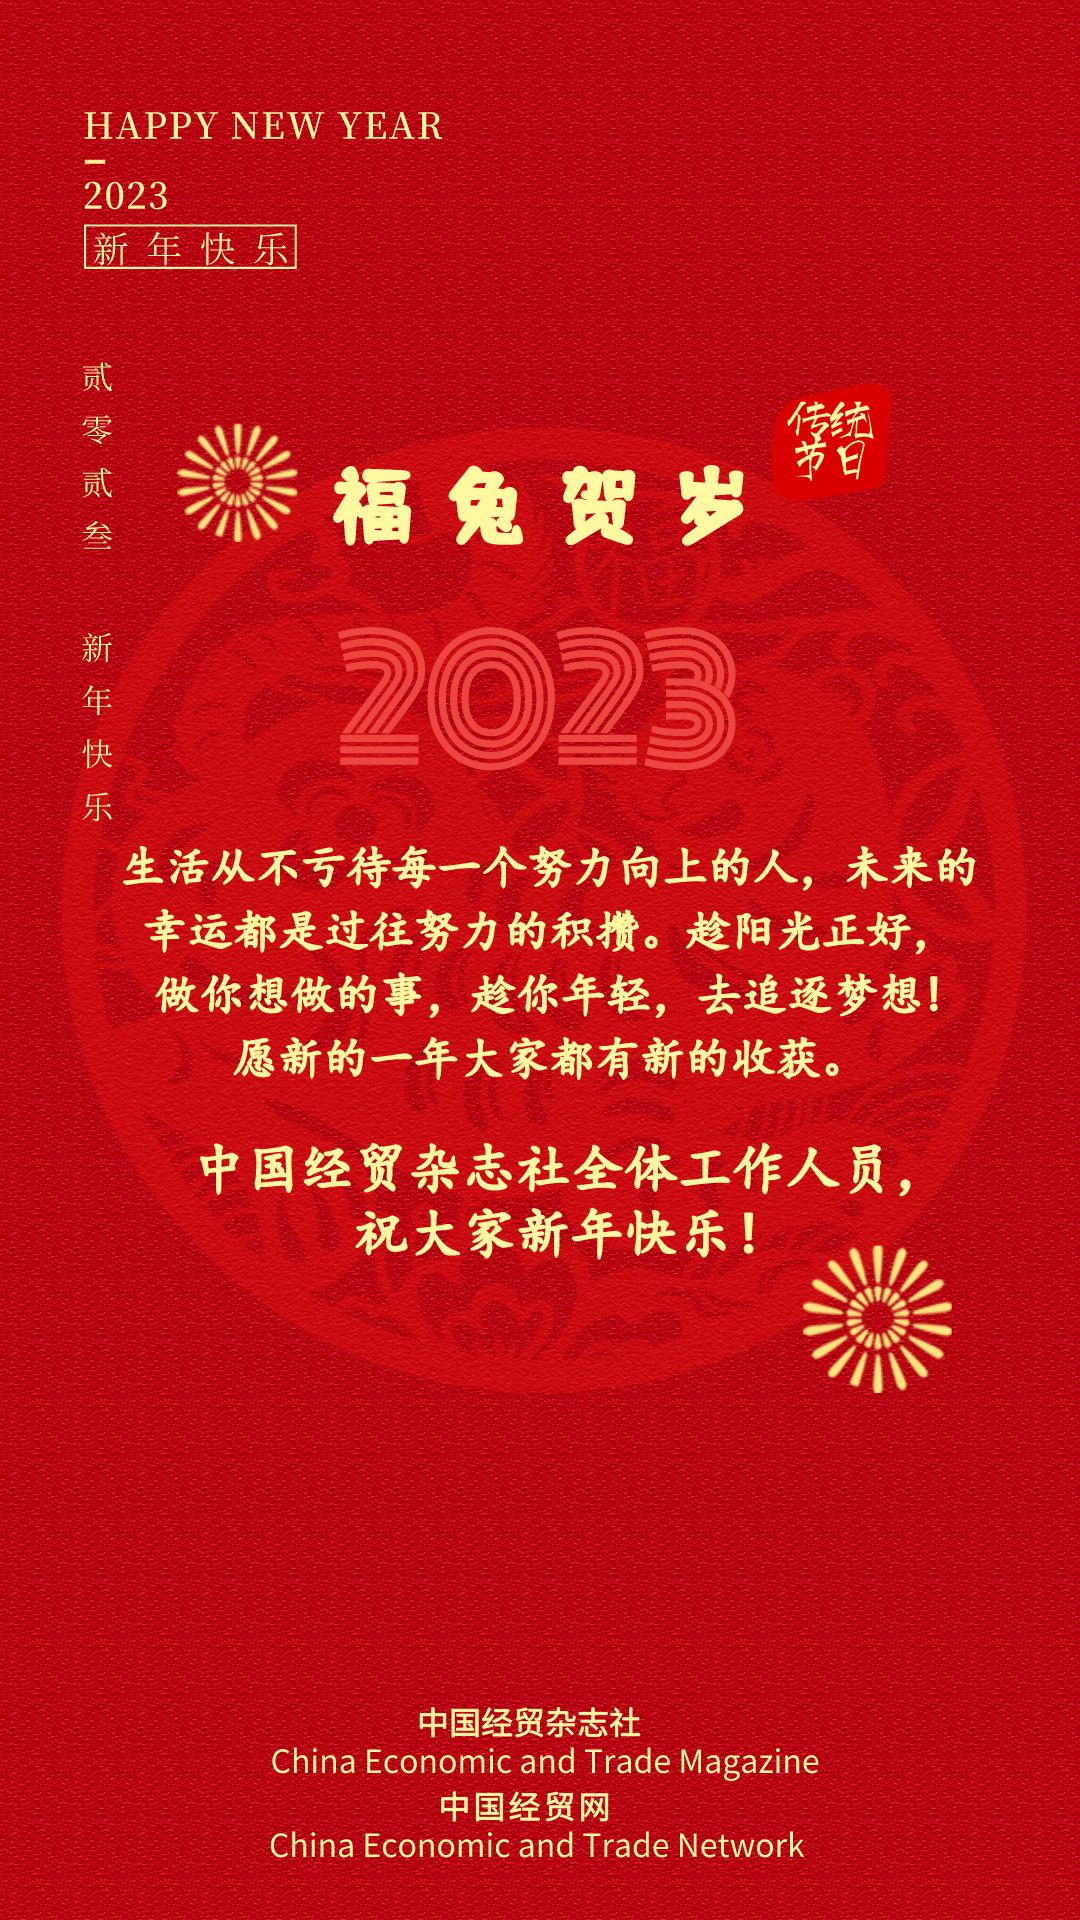 中国经贸杂志社全体工作人员，祝大家新年快乐！